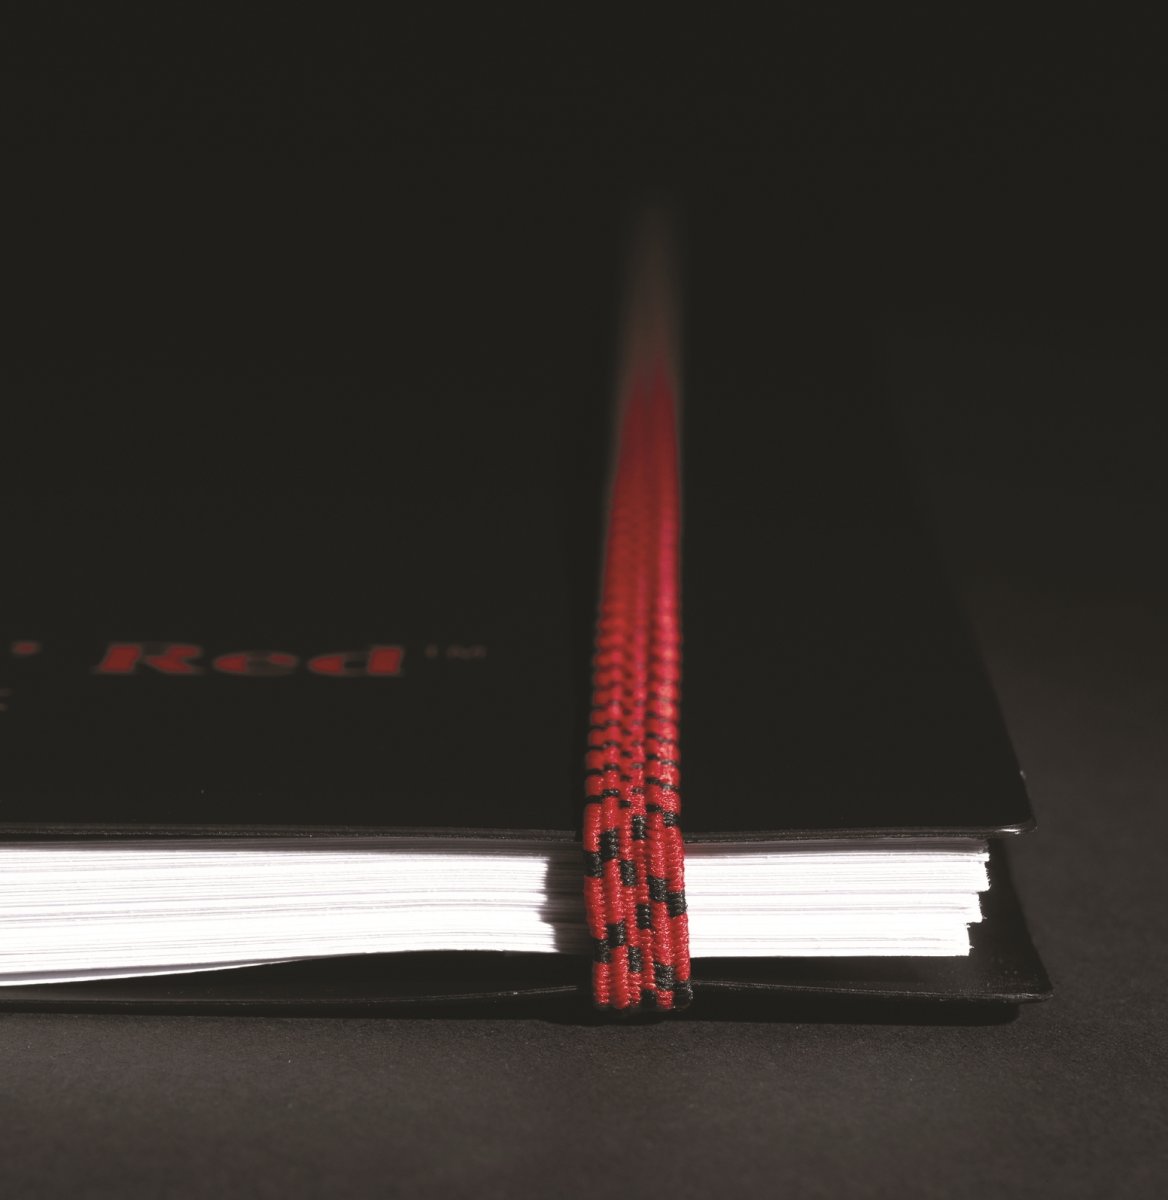 Oxford Black n'Red Notesbog A4, kvadreret